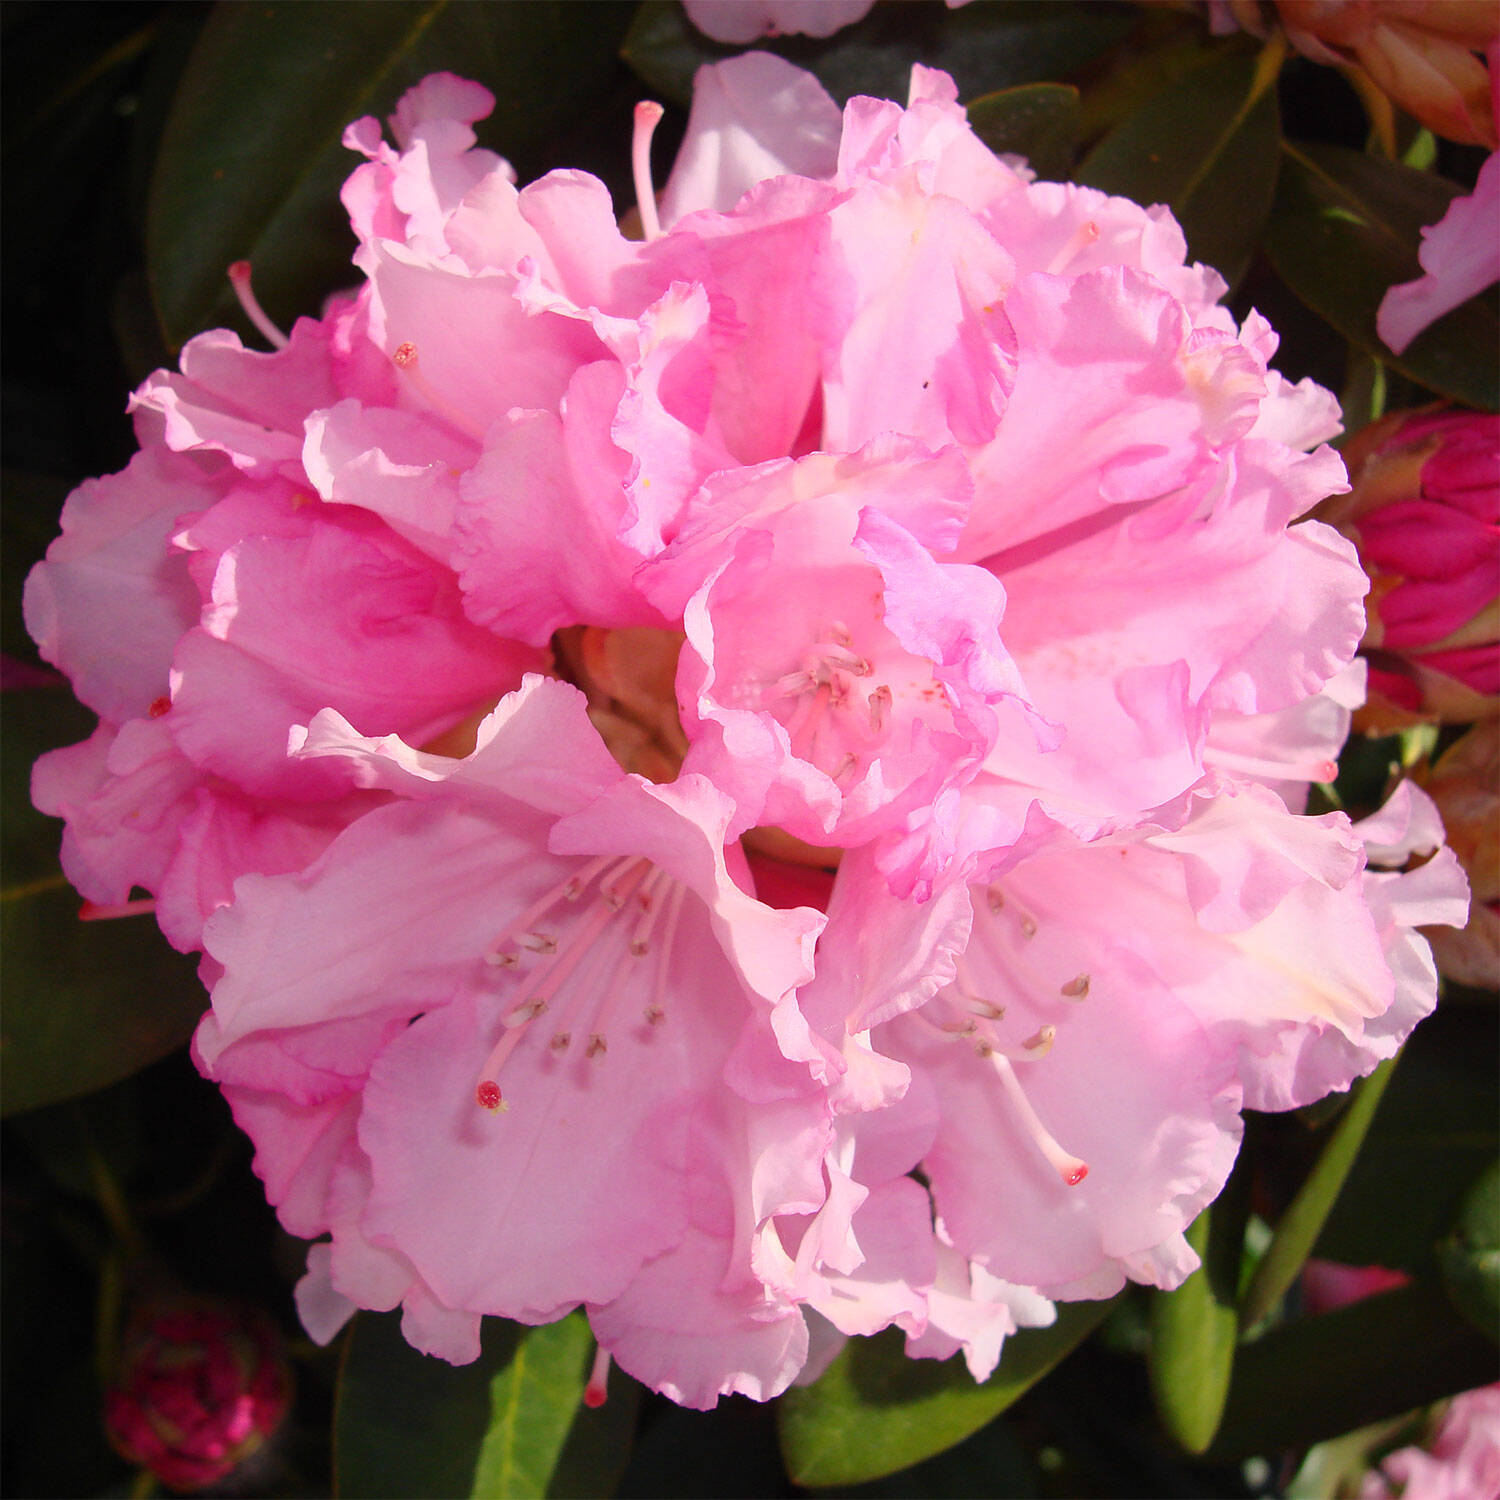 Kategorie <b>Hecken </b> - Rhododendron 'Silberwolke' - Rhododendron yakushimanum 'Silberwolke'